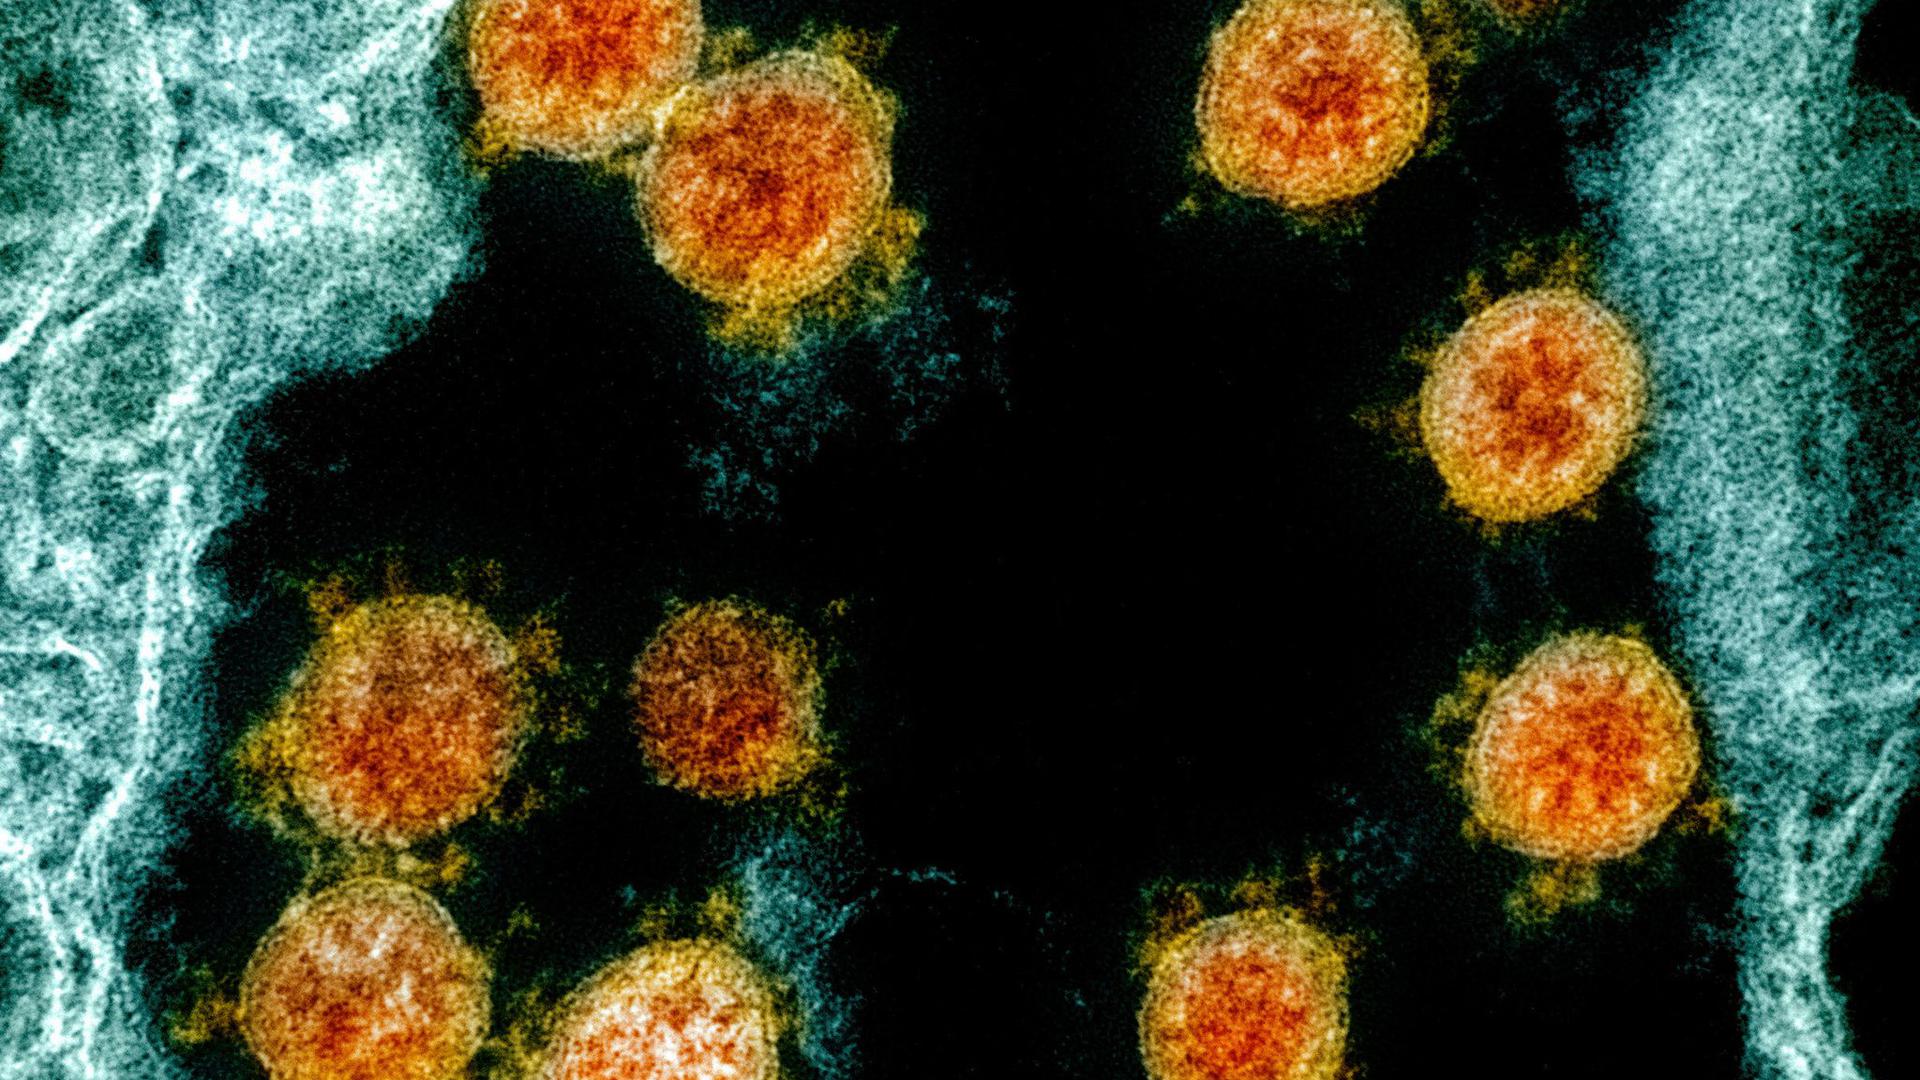 Elektronenmikroskopische Aufnahme von Partikeln des Coronavirus SARS-CoV-2.